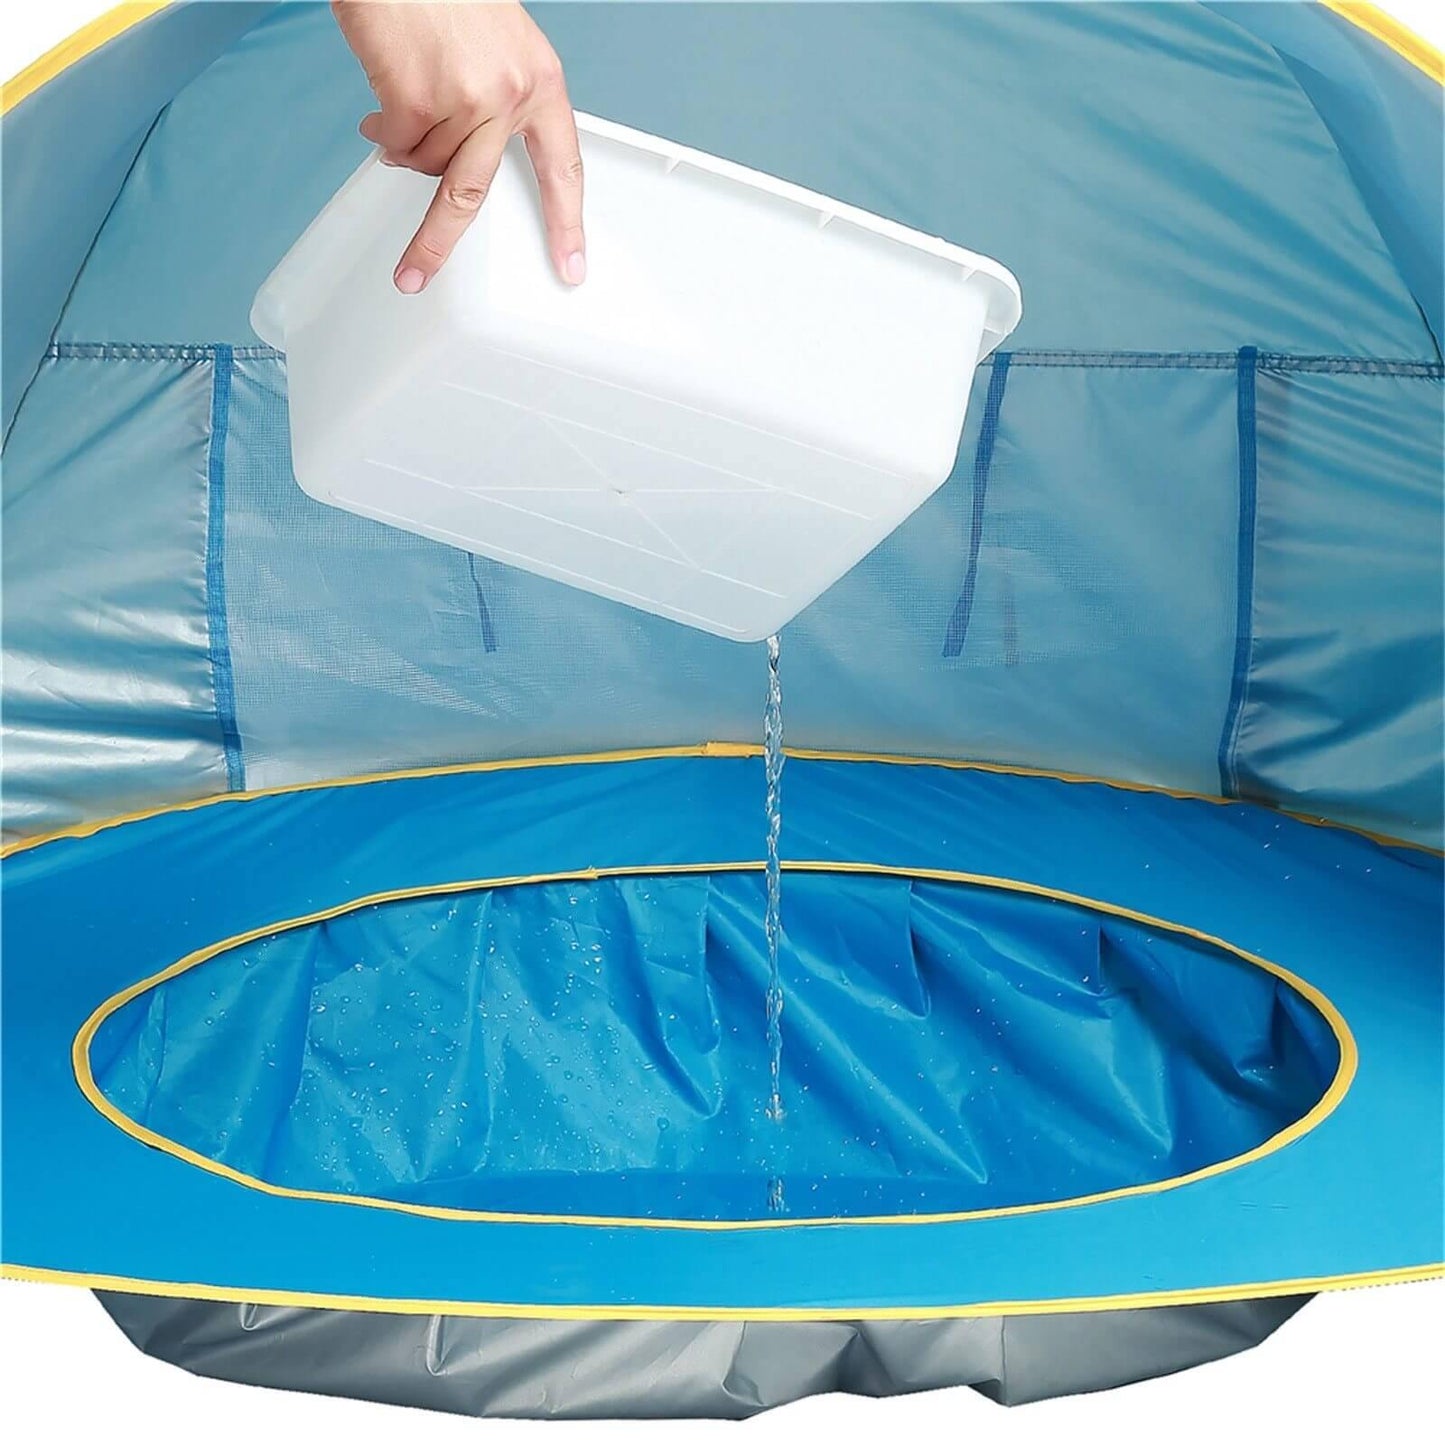 UV-protecting Children Waterproof Beach Tent